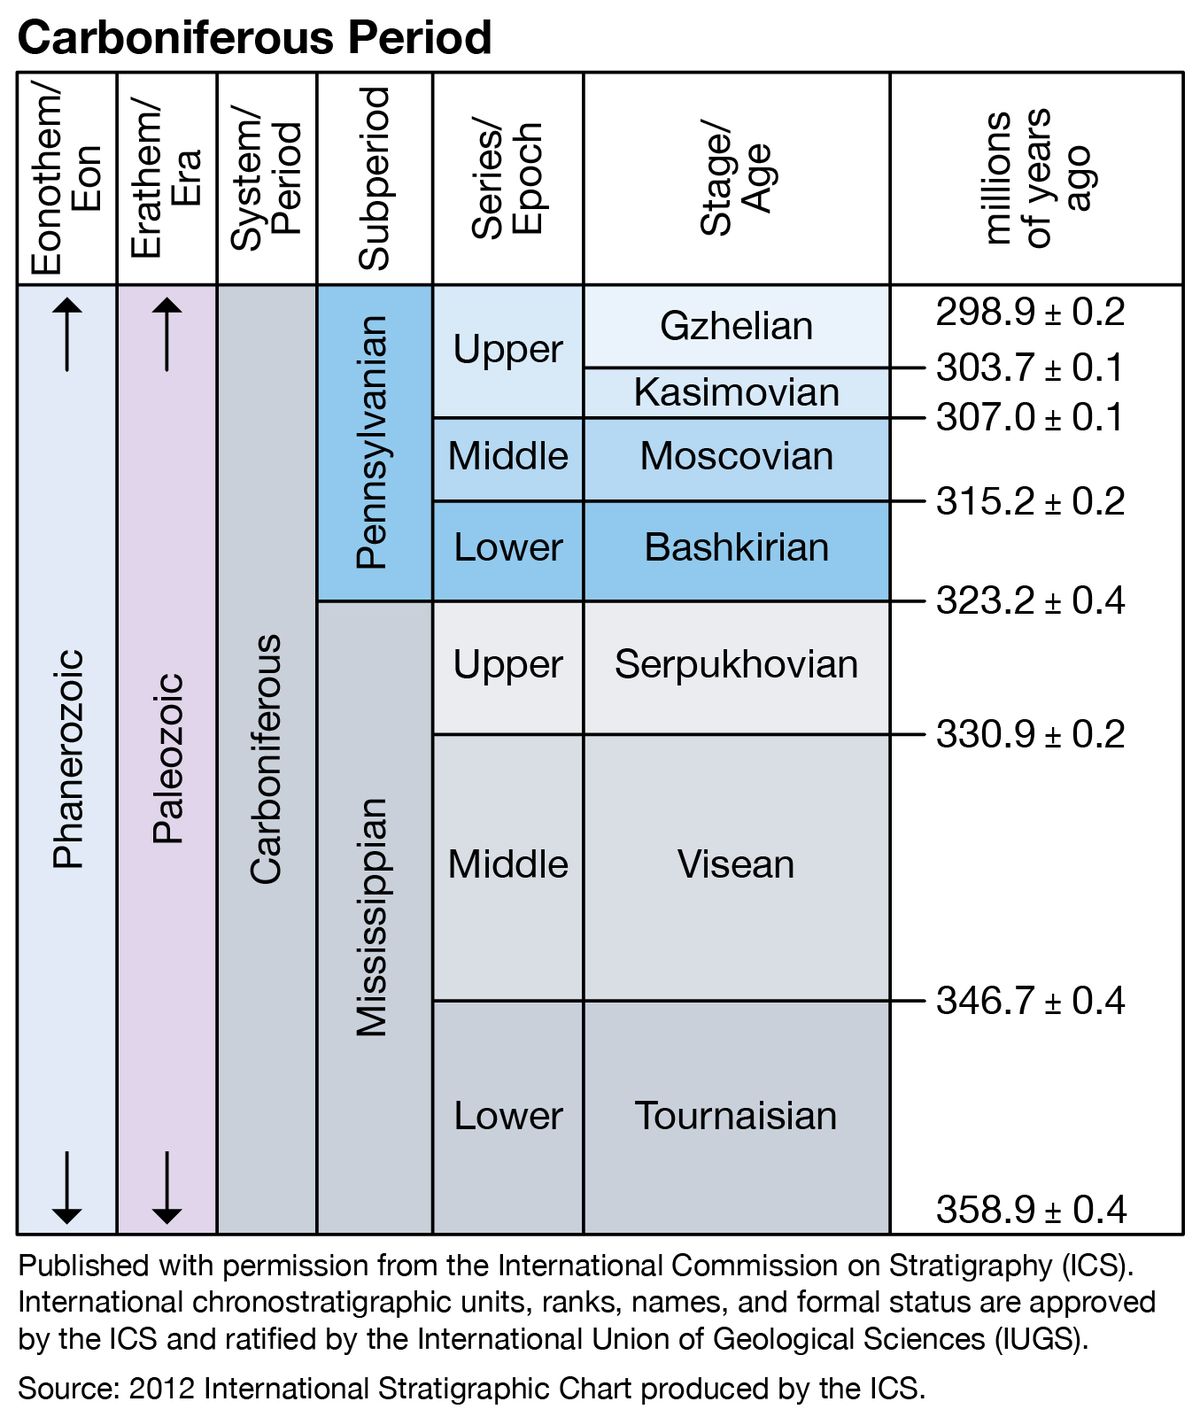 carboniferous period timeline